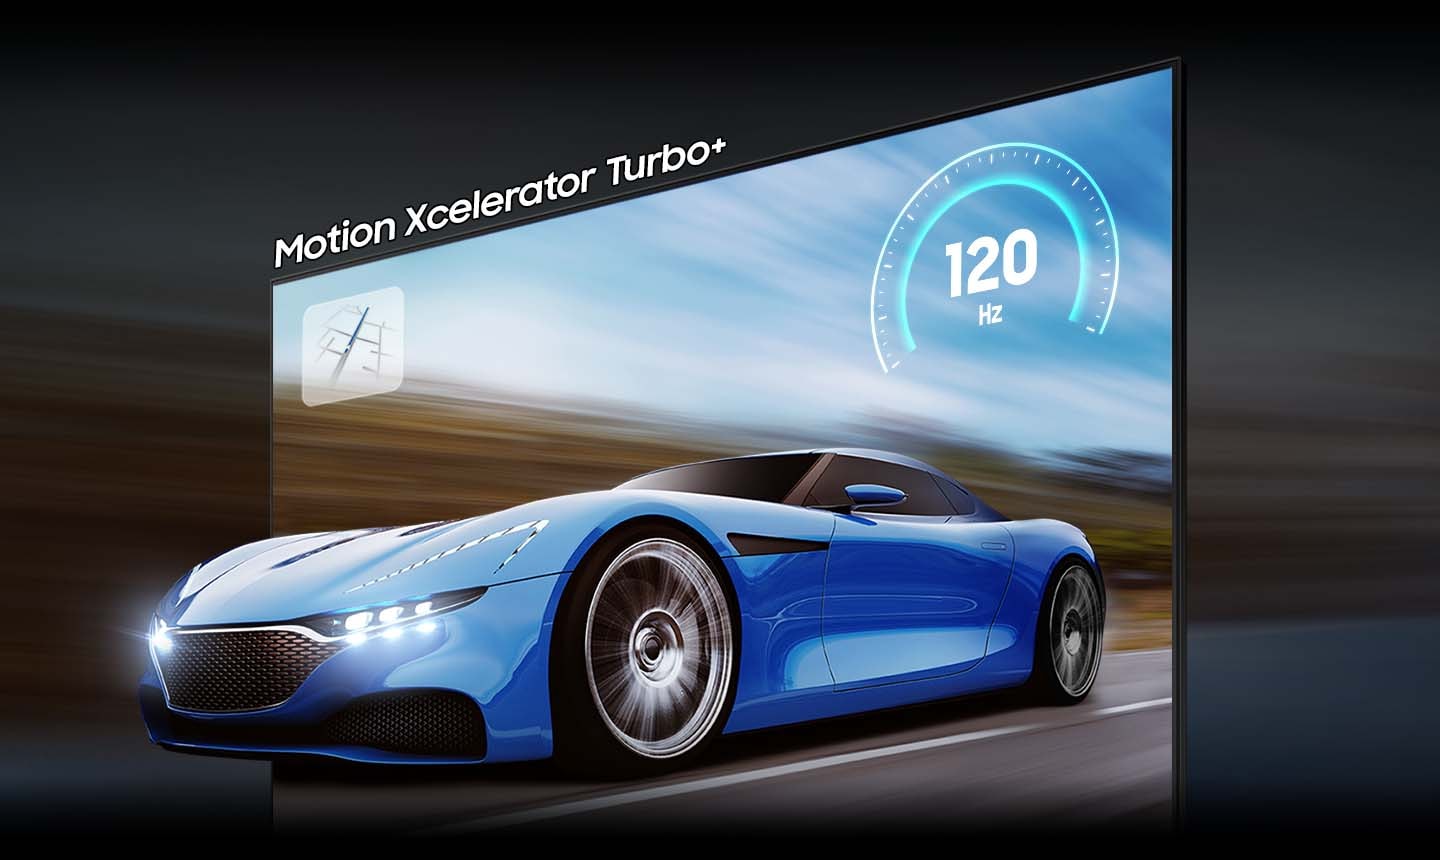 Plavi automobil na TV ekranu izgleda jasnije i vidljivije na QLED TV-u nego na konvencionalnom TV-u zahvaljujući motion xcelerator turbo+ tehnologiji. 120Hz je na displeju.